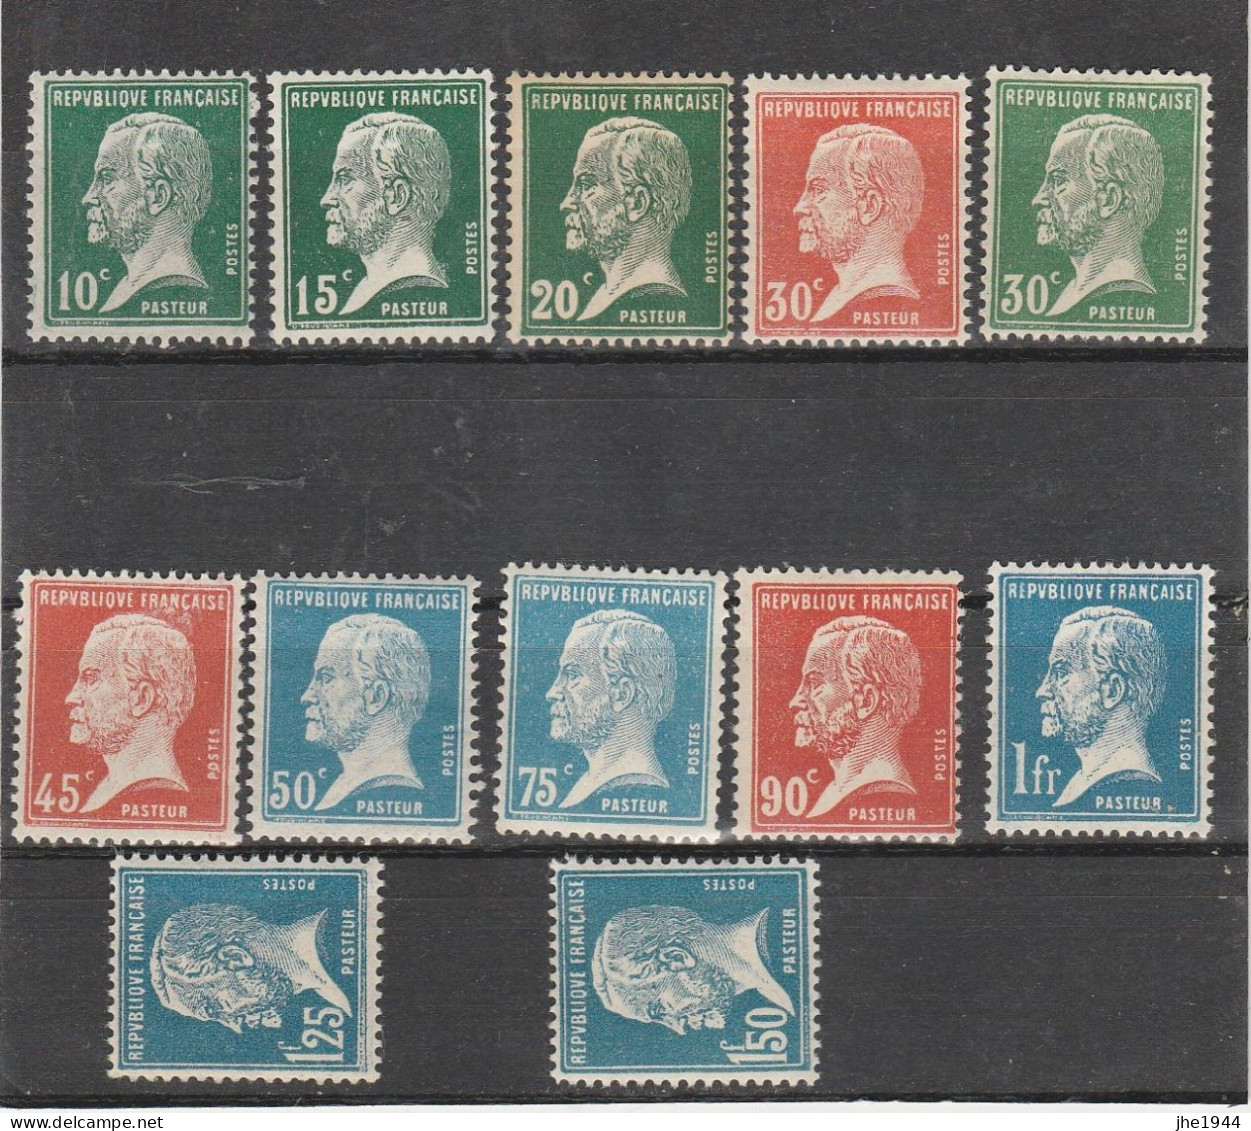 France N° 170 à 181 ** Type Pasteur, Serie De 12 Valeurs - Unused Stamps